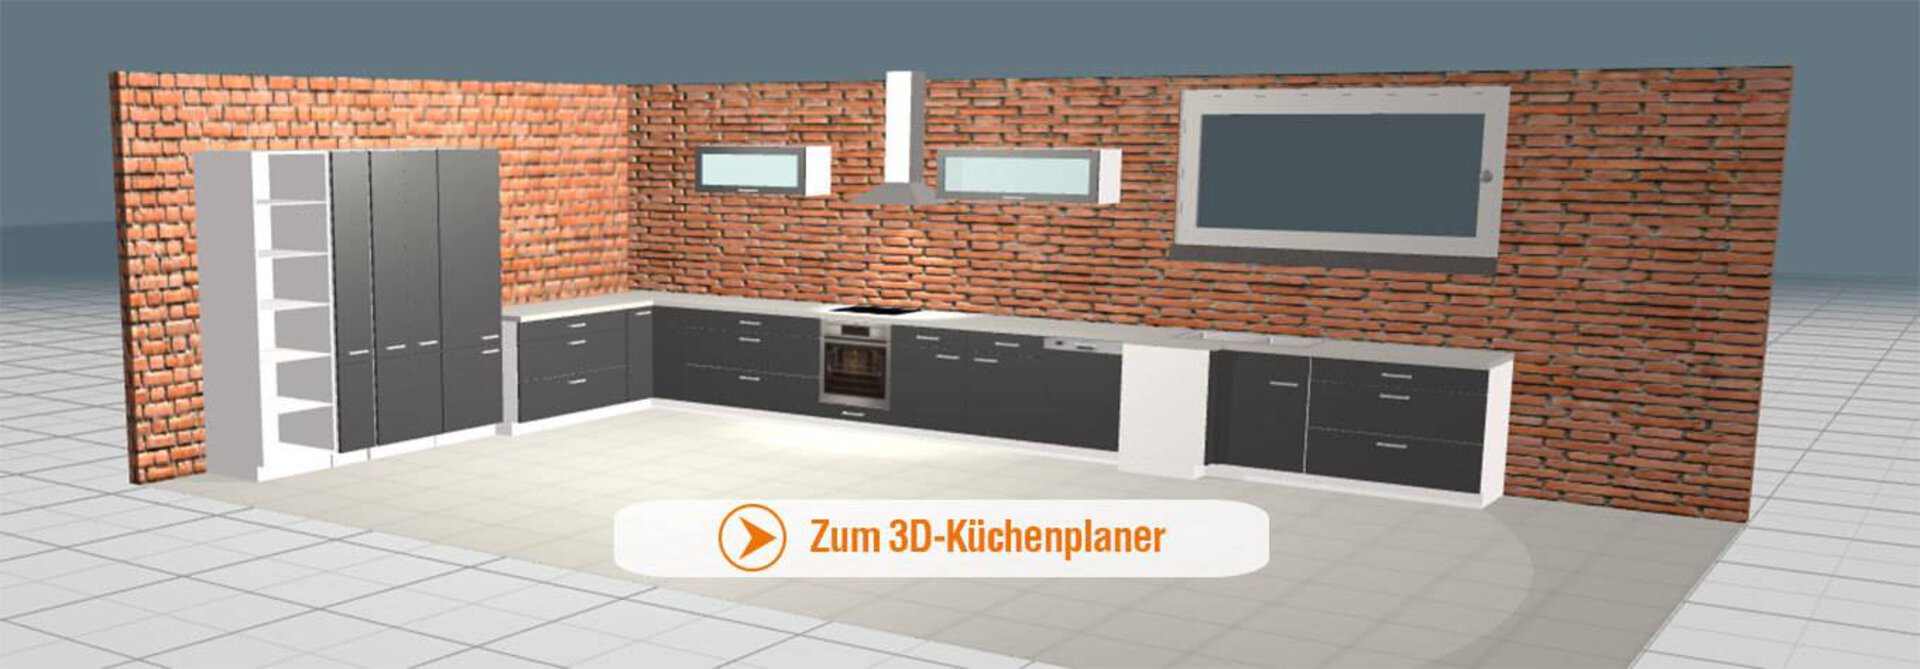 Bannerbild zu 3D-Küchenplaner zeigt eine darin geplante Küche.